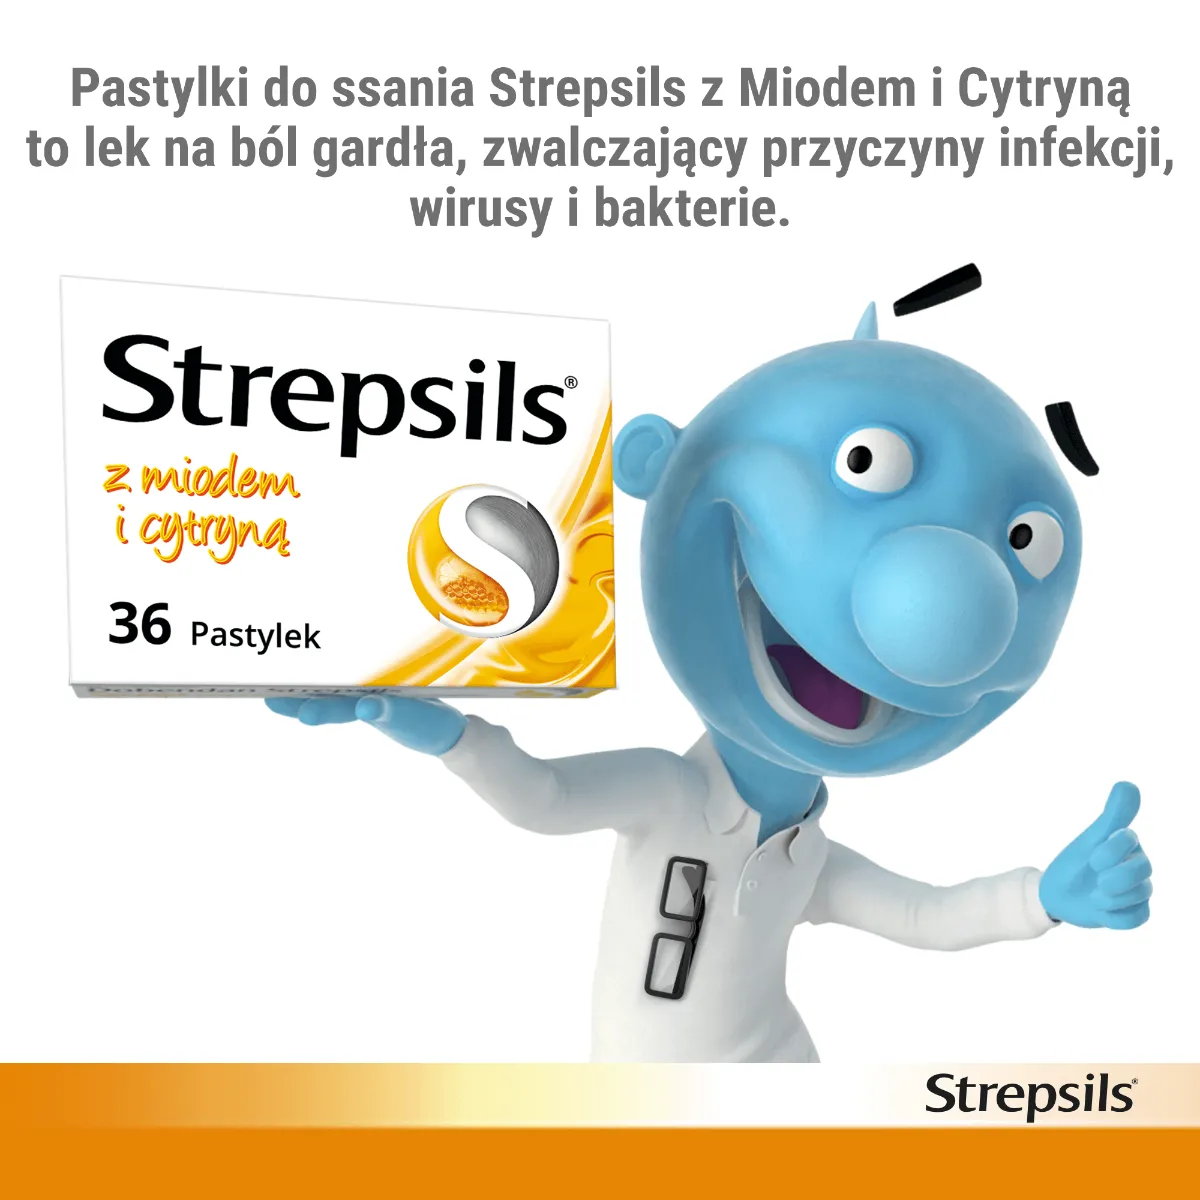 Strepsils - pastylki na ból gardła z miodem i cytyną, 36 pastylek twardych. 